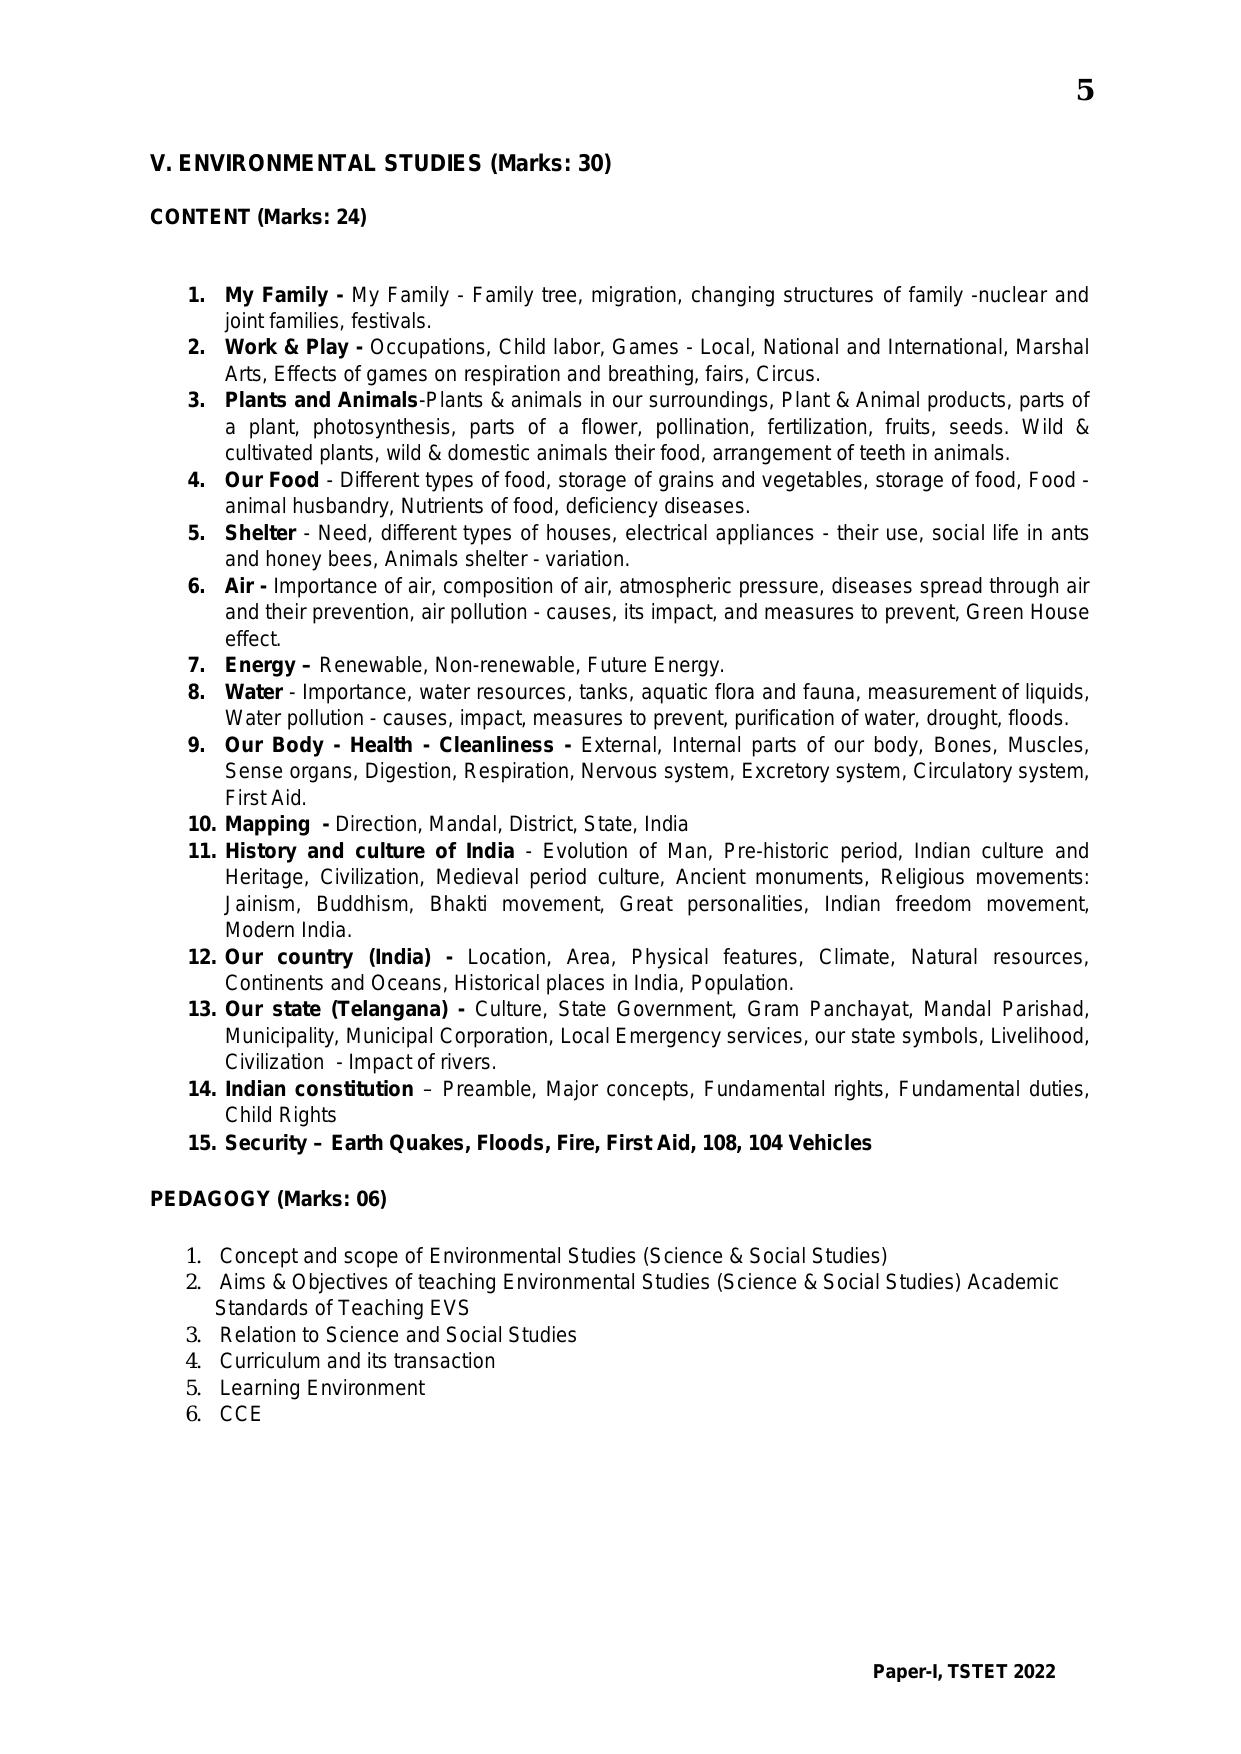 TS TET Syllabus for Paper 1 (Hindi) - Page 5